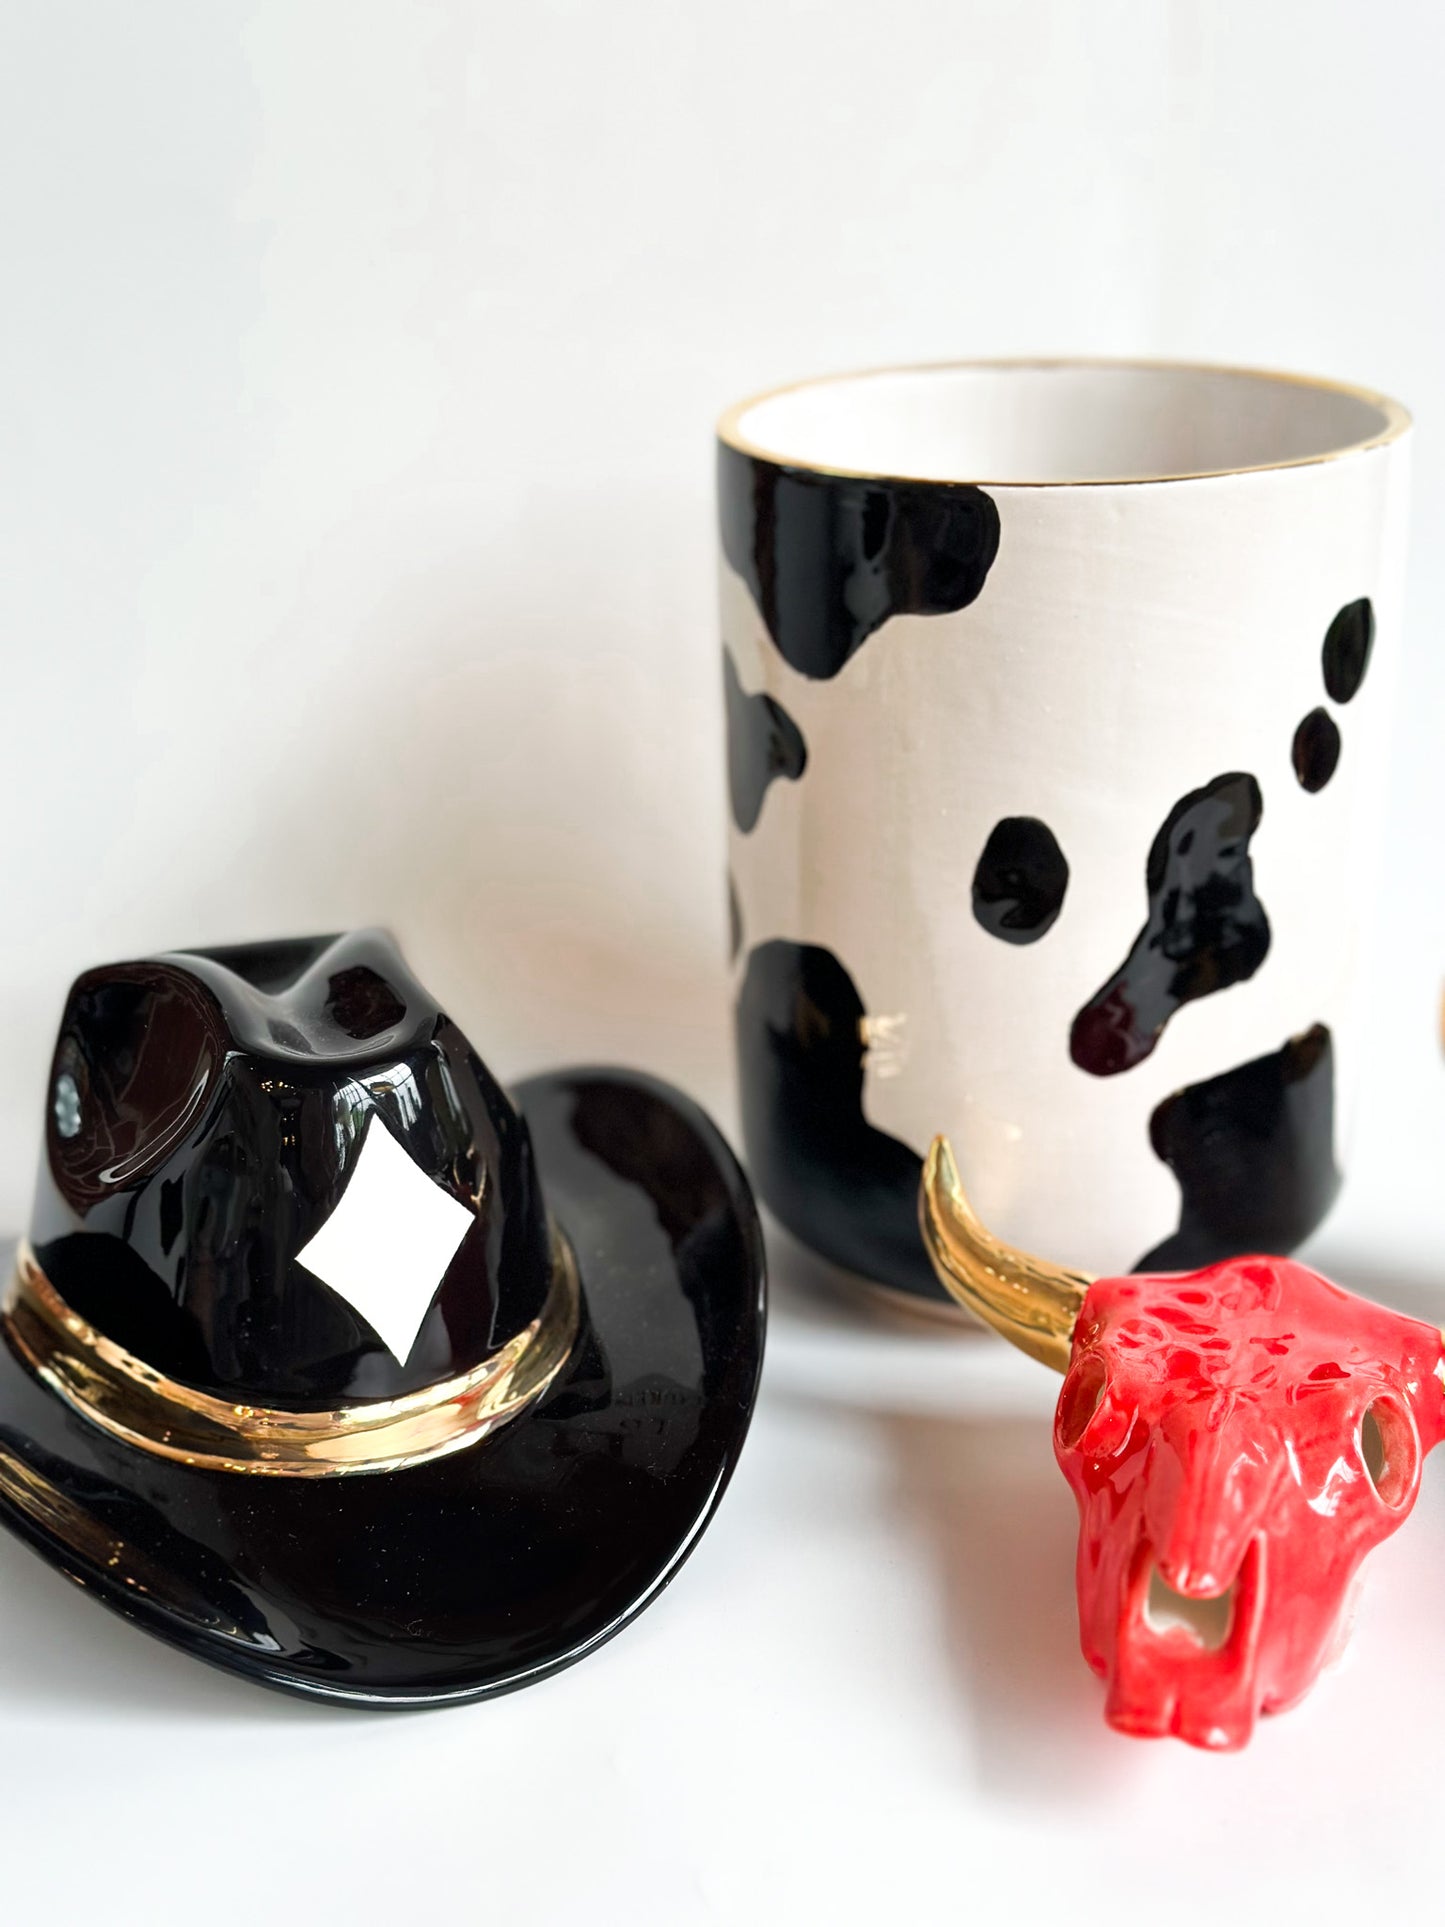 Cow Print Vase/Utensil Holder